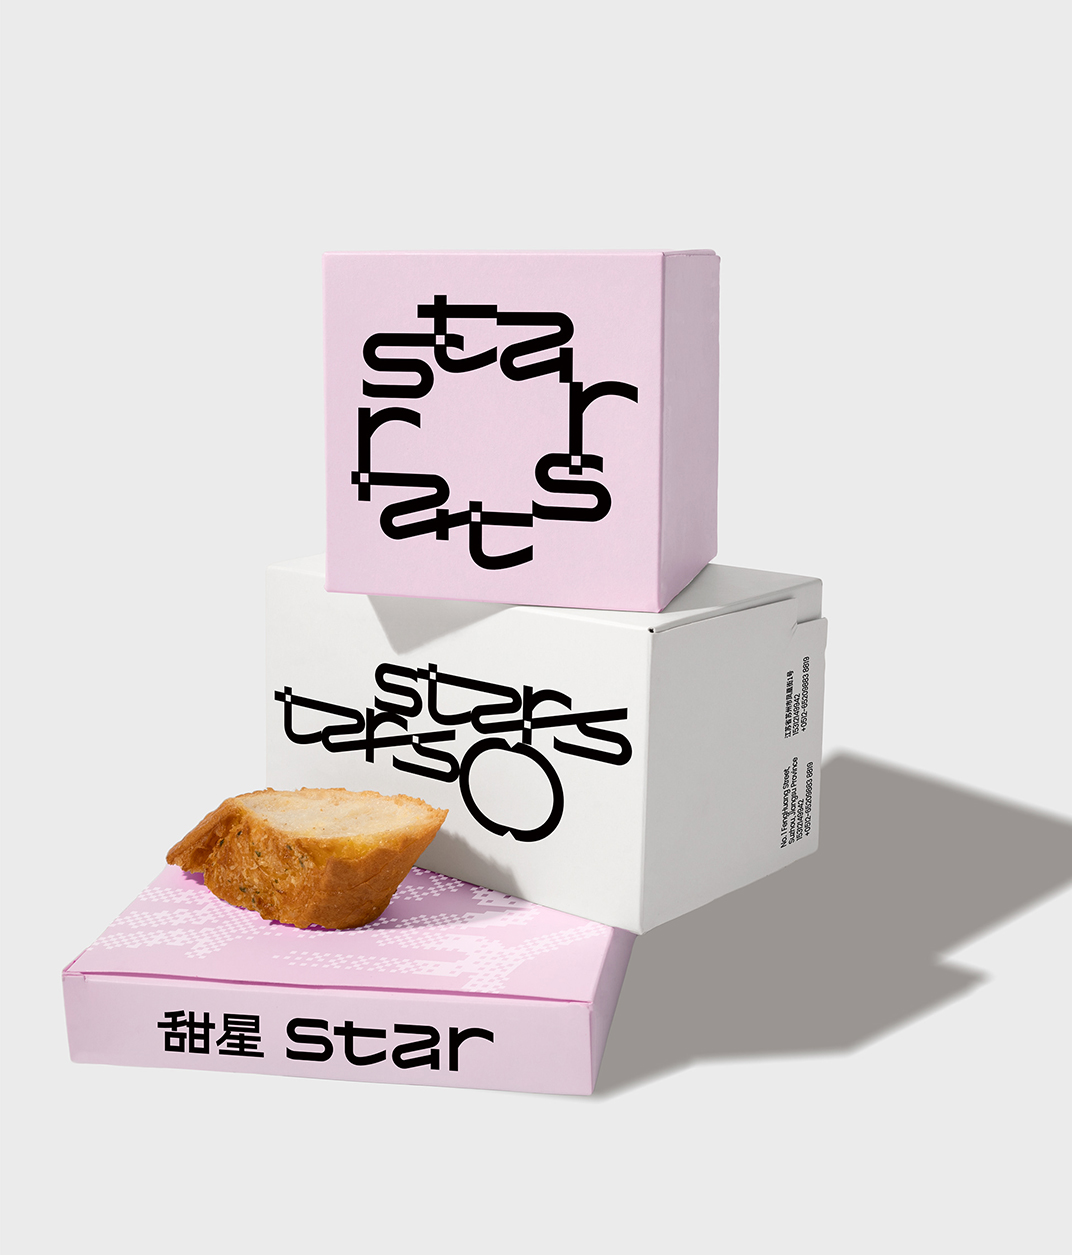 甜星Star品牌形象和包装设计 北京 深圳 上海 北京 广州 武汉 咖啡店 餐饮商业 logo设计 vi设计 空间设计